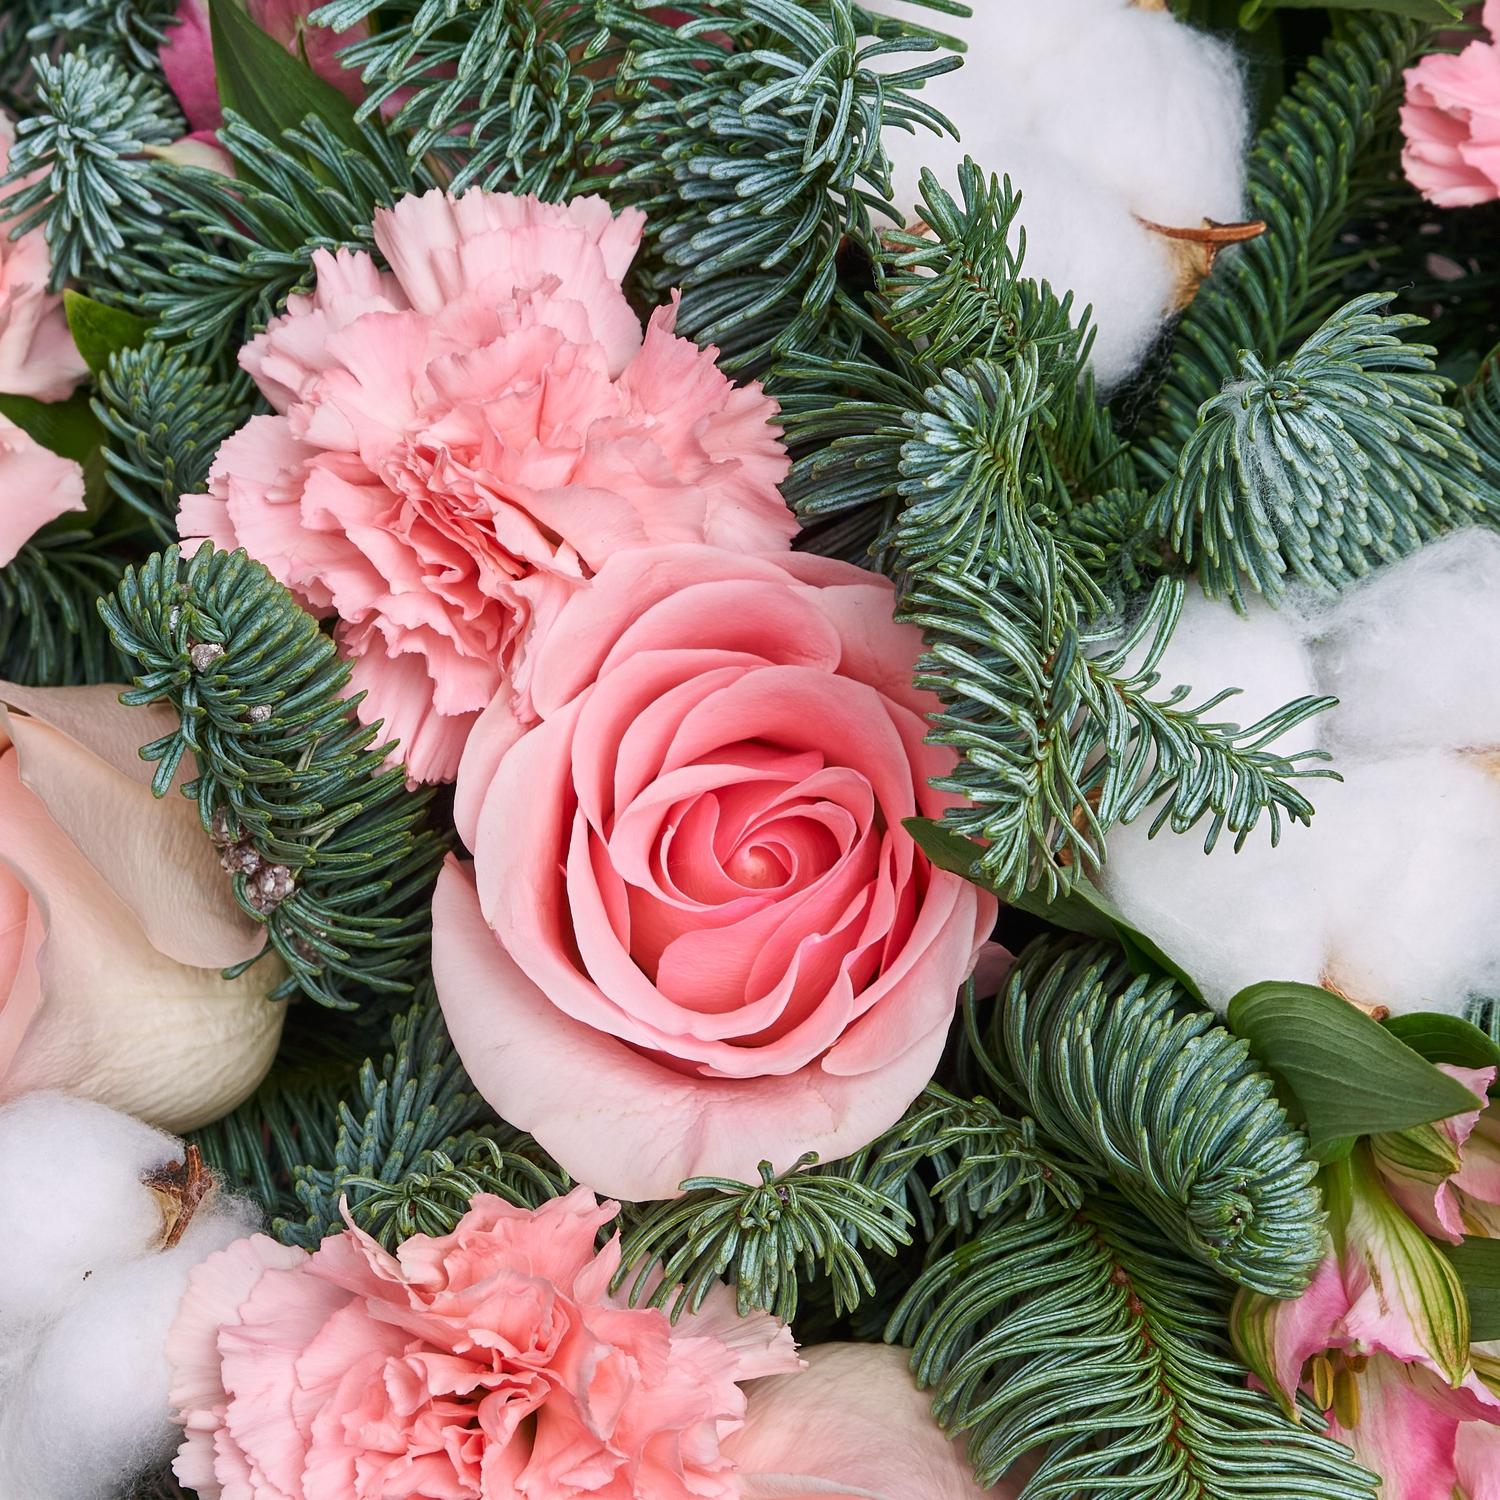 Свежесрезанные цветы… Даже зимой они могут радовать вас! — Абакан 24